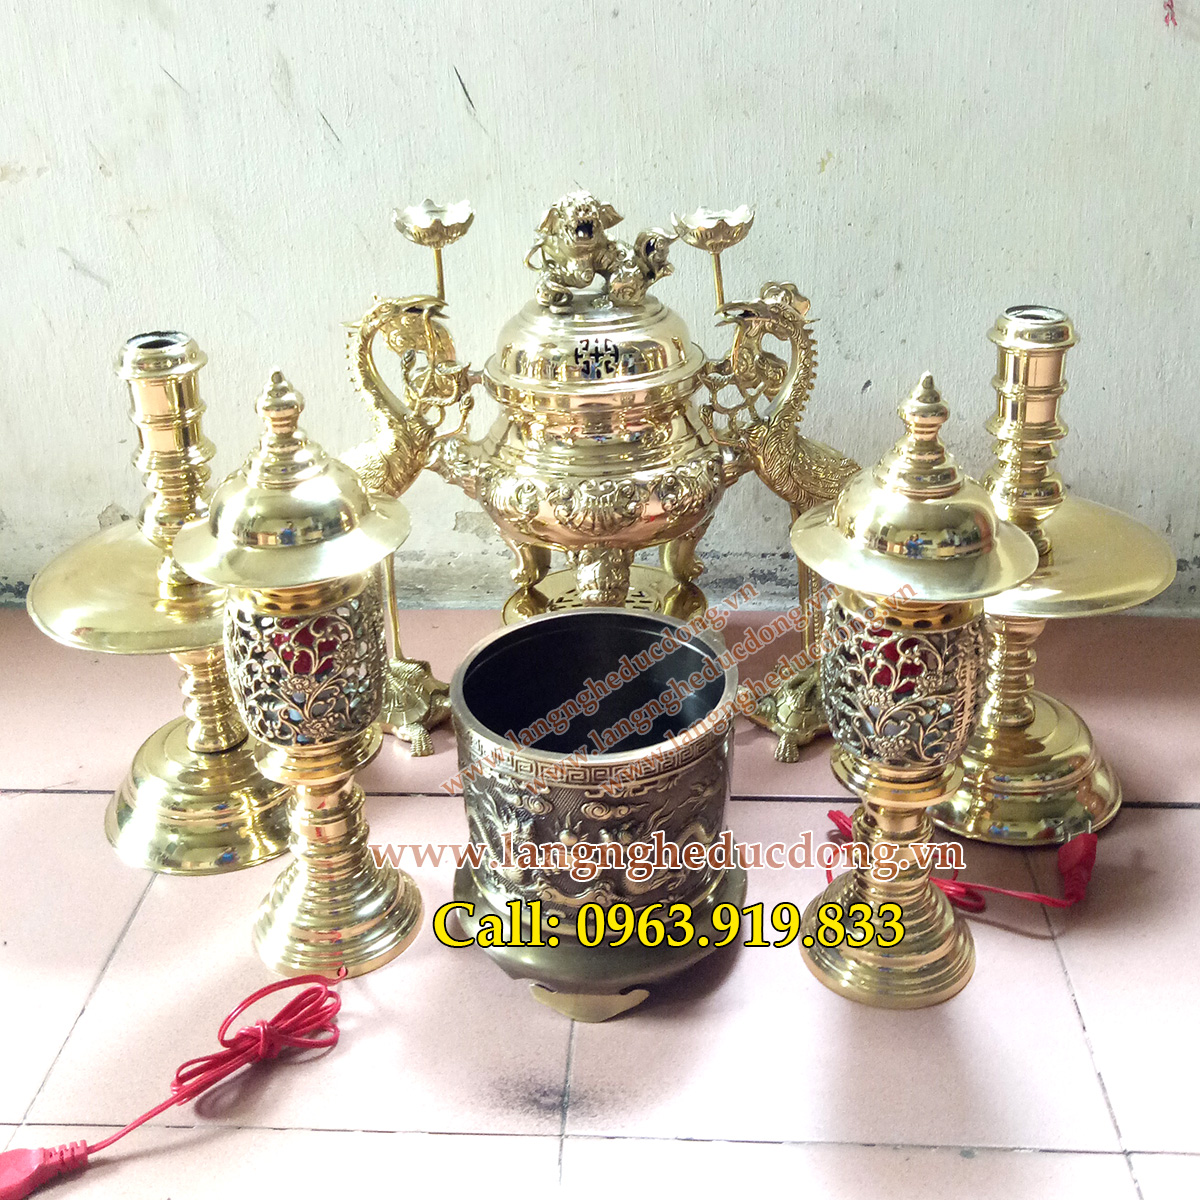 langngheducdong.vn - đỉnh đồng, lư hương, bát hương, đèn thờ, đồ thờ vàng bóng